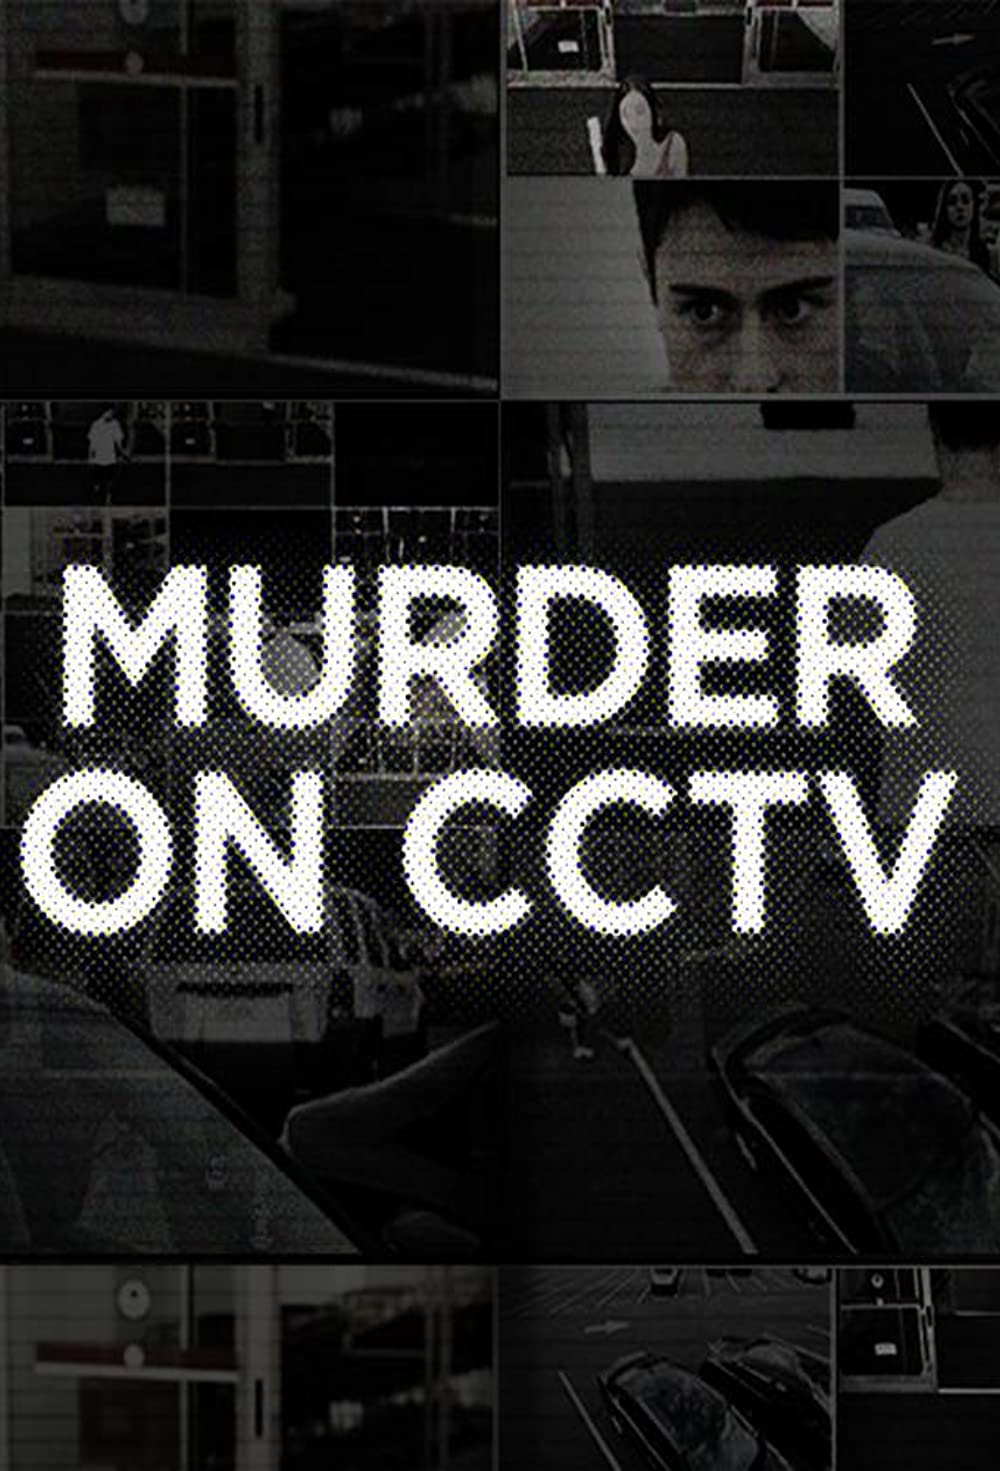 Murder on CCTV